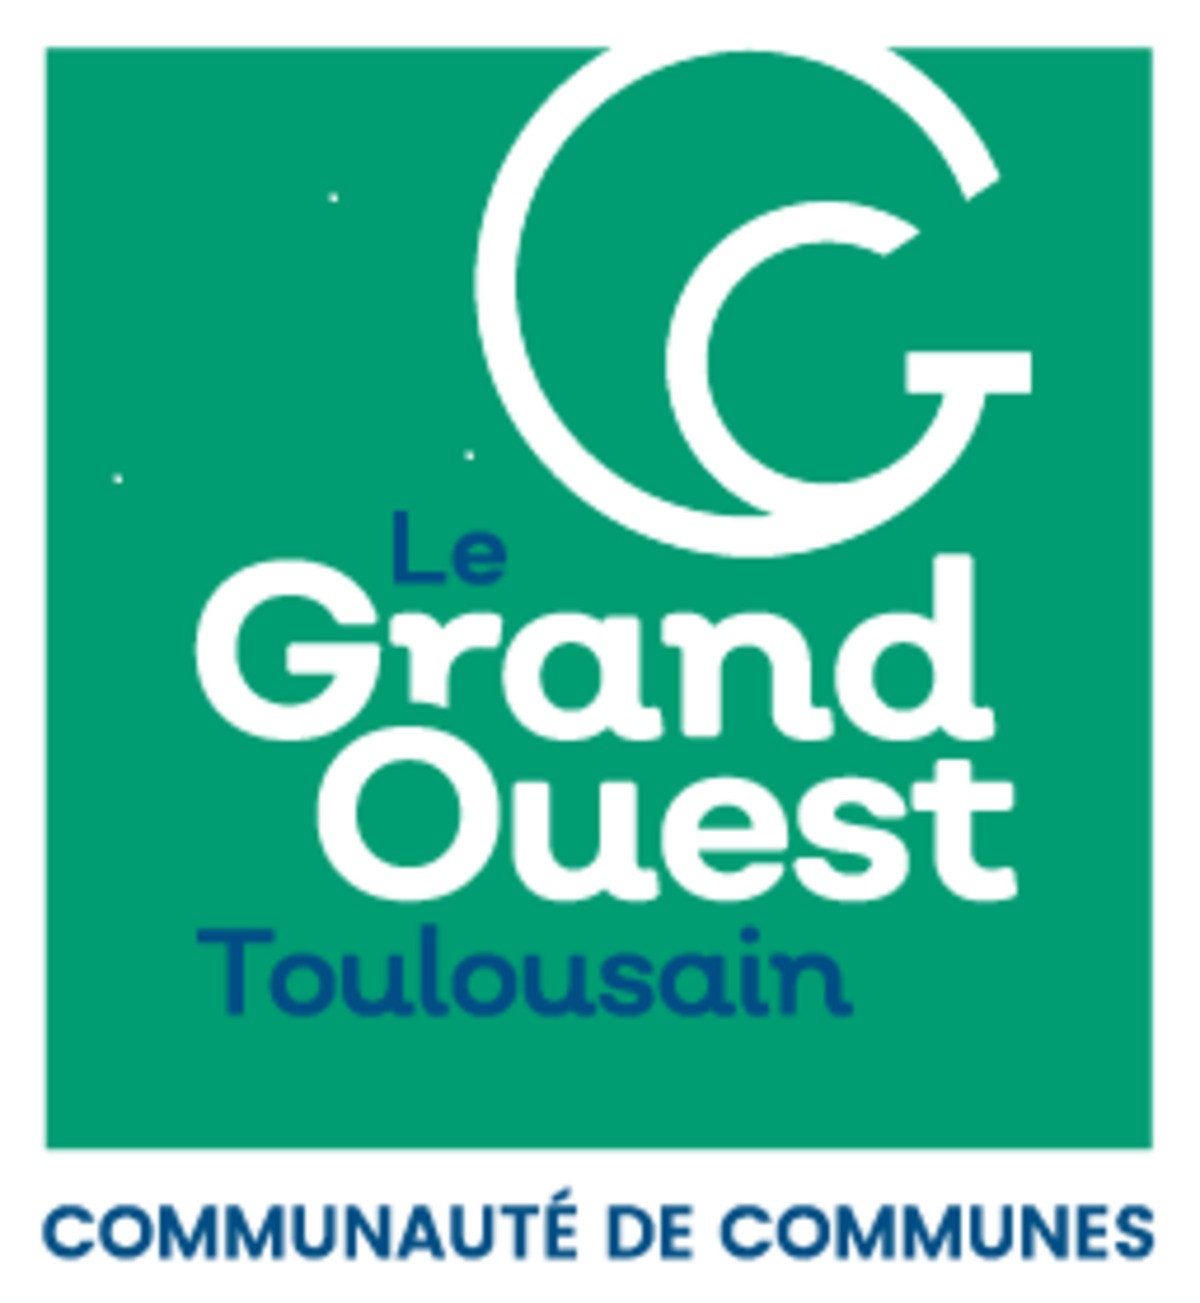 Communauté de communes Le Grand Ouest Toulousain